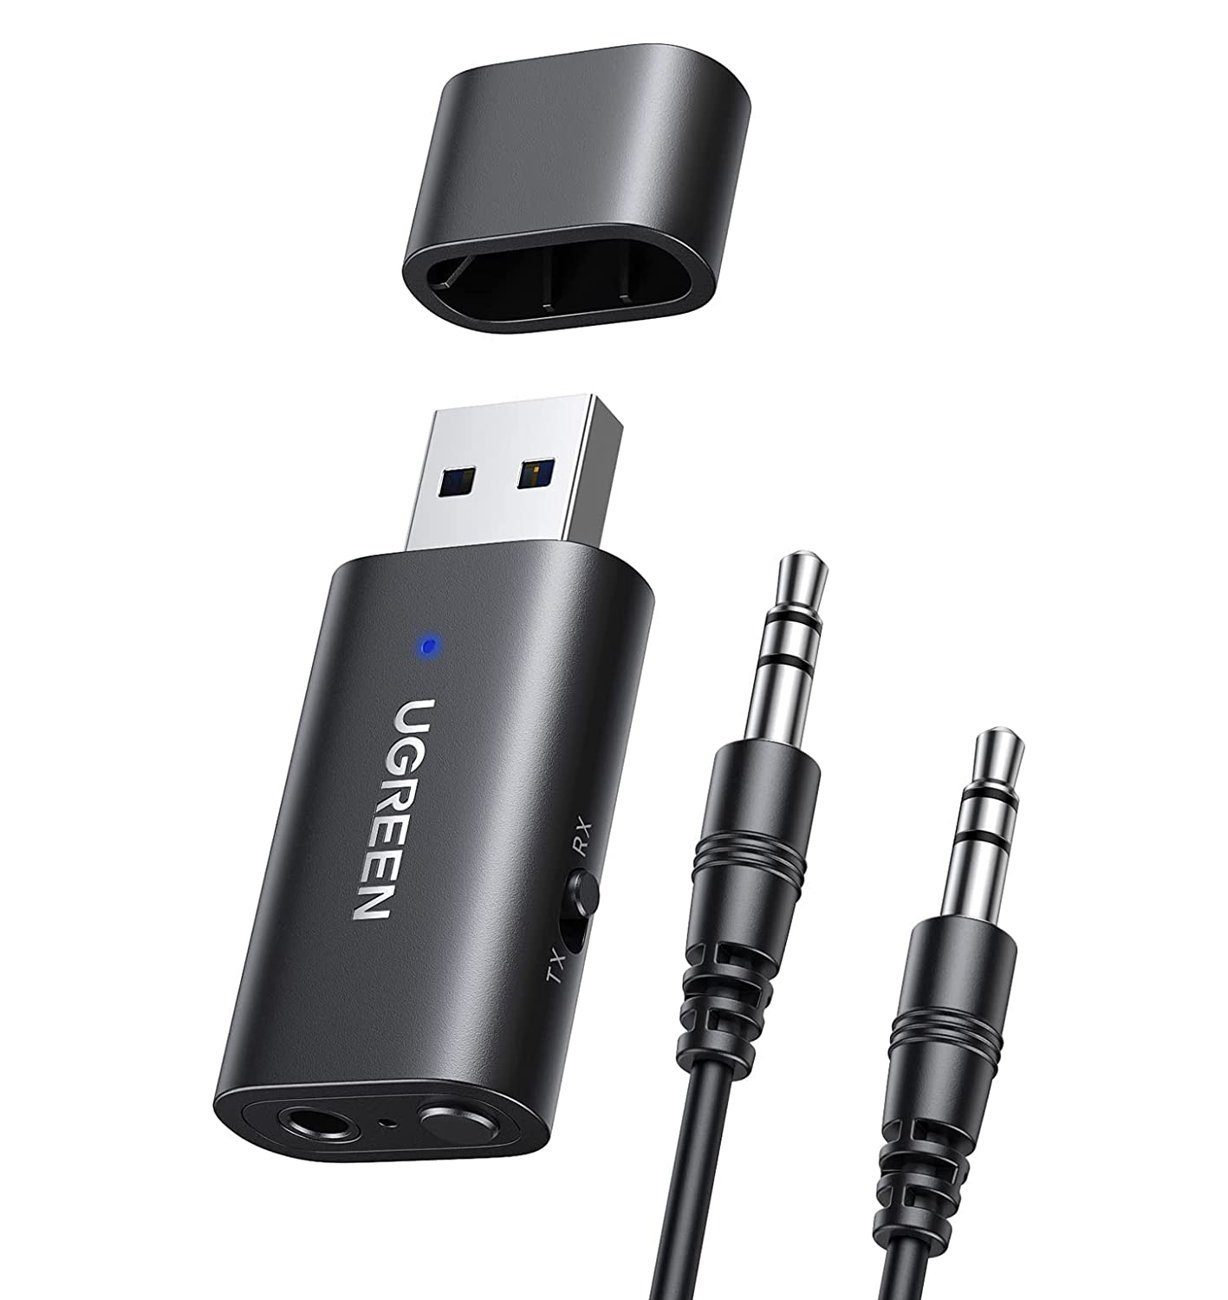 UGREEN »5.1 Bluetooth Adapter 2 in 1 Bluetooth Sender TV und Bluetooth  Empfänger Klinke Audio mit 1m Aux Kabel für PC Laptop Kopfhörer« Bluetooth- Adapter online kaufen | OTTO